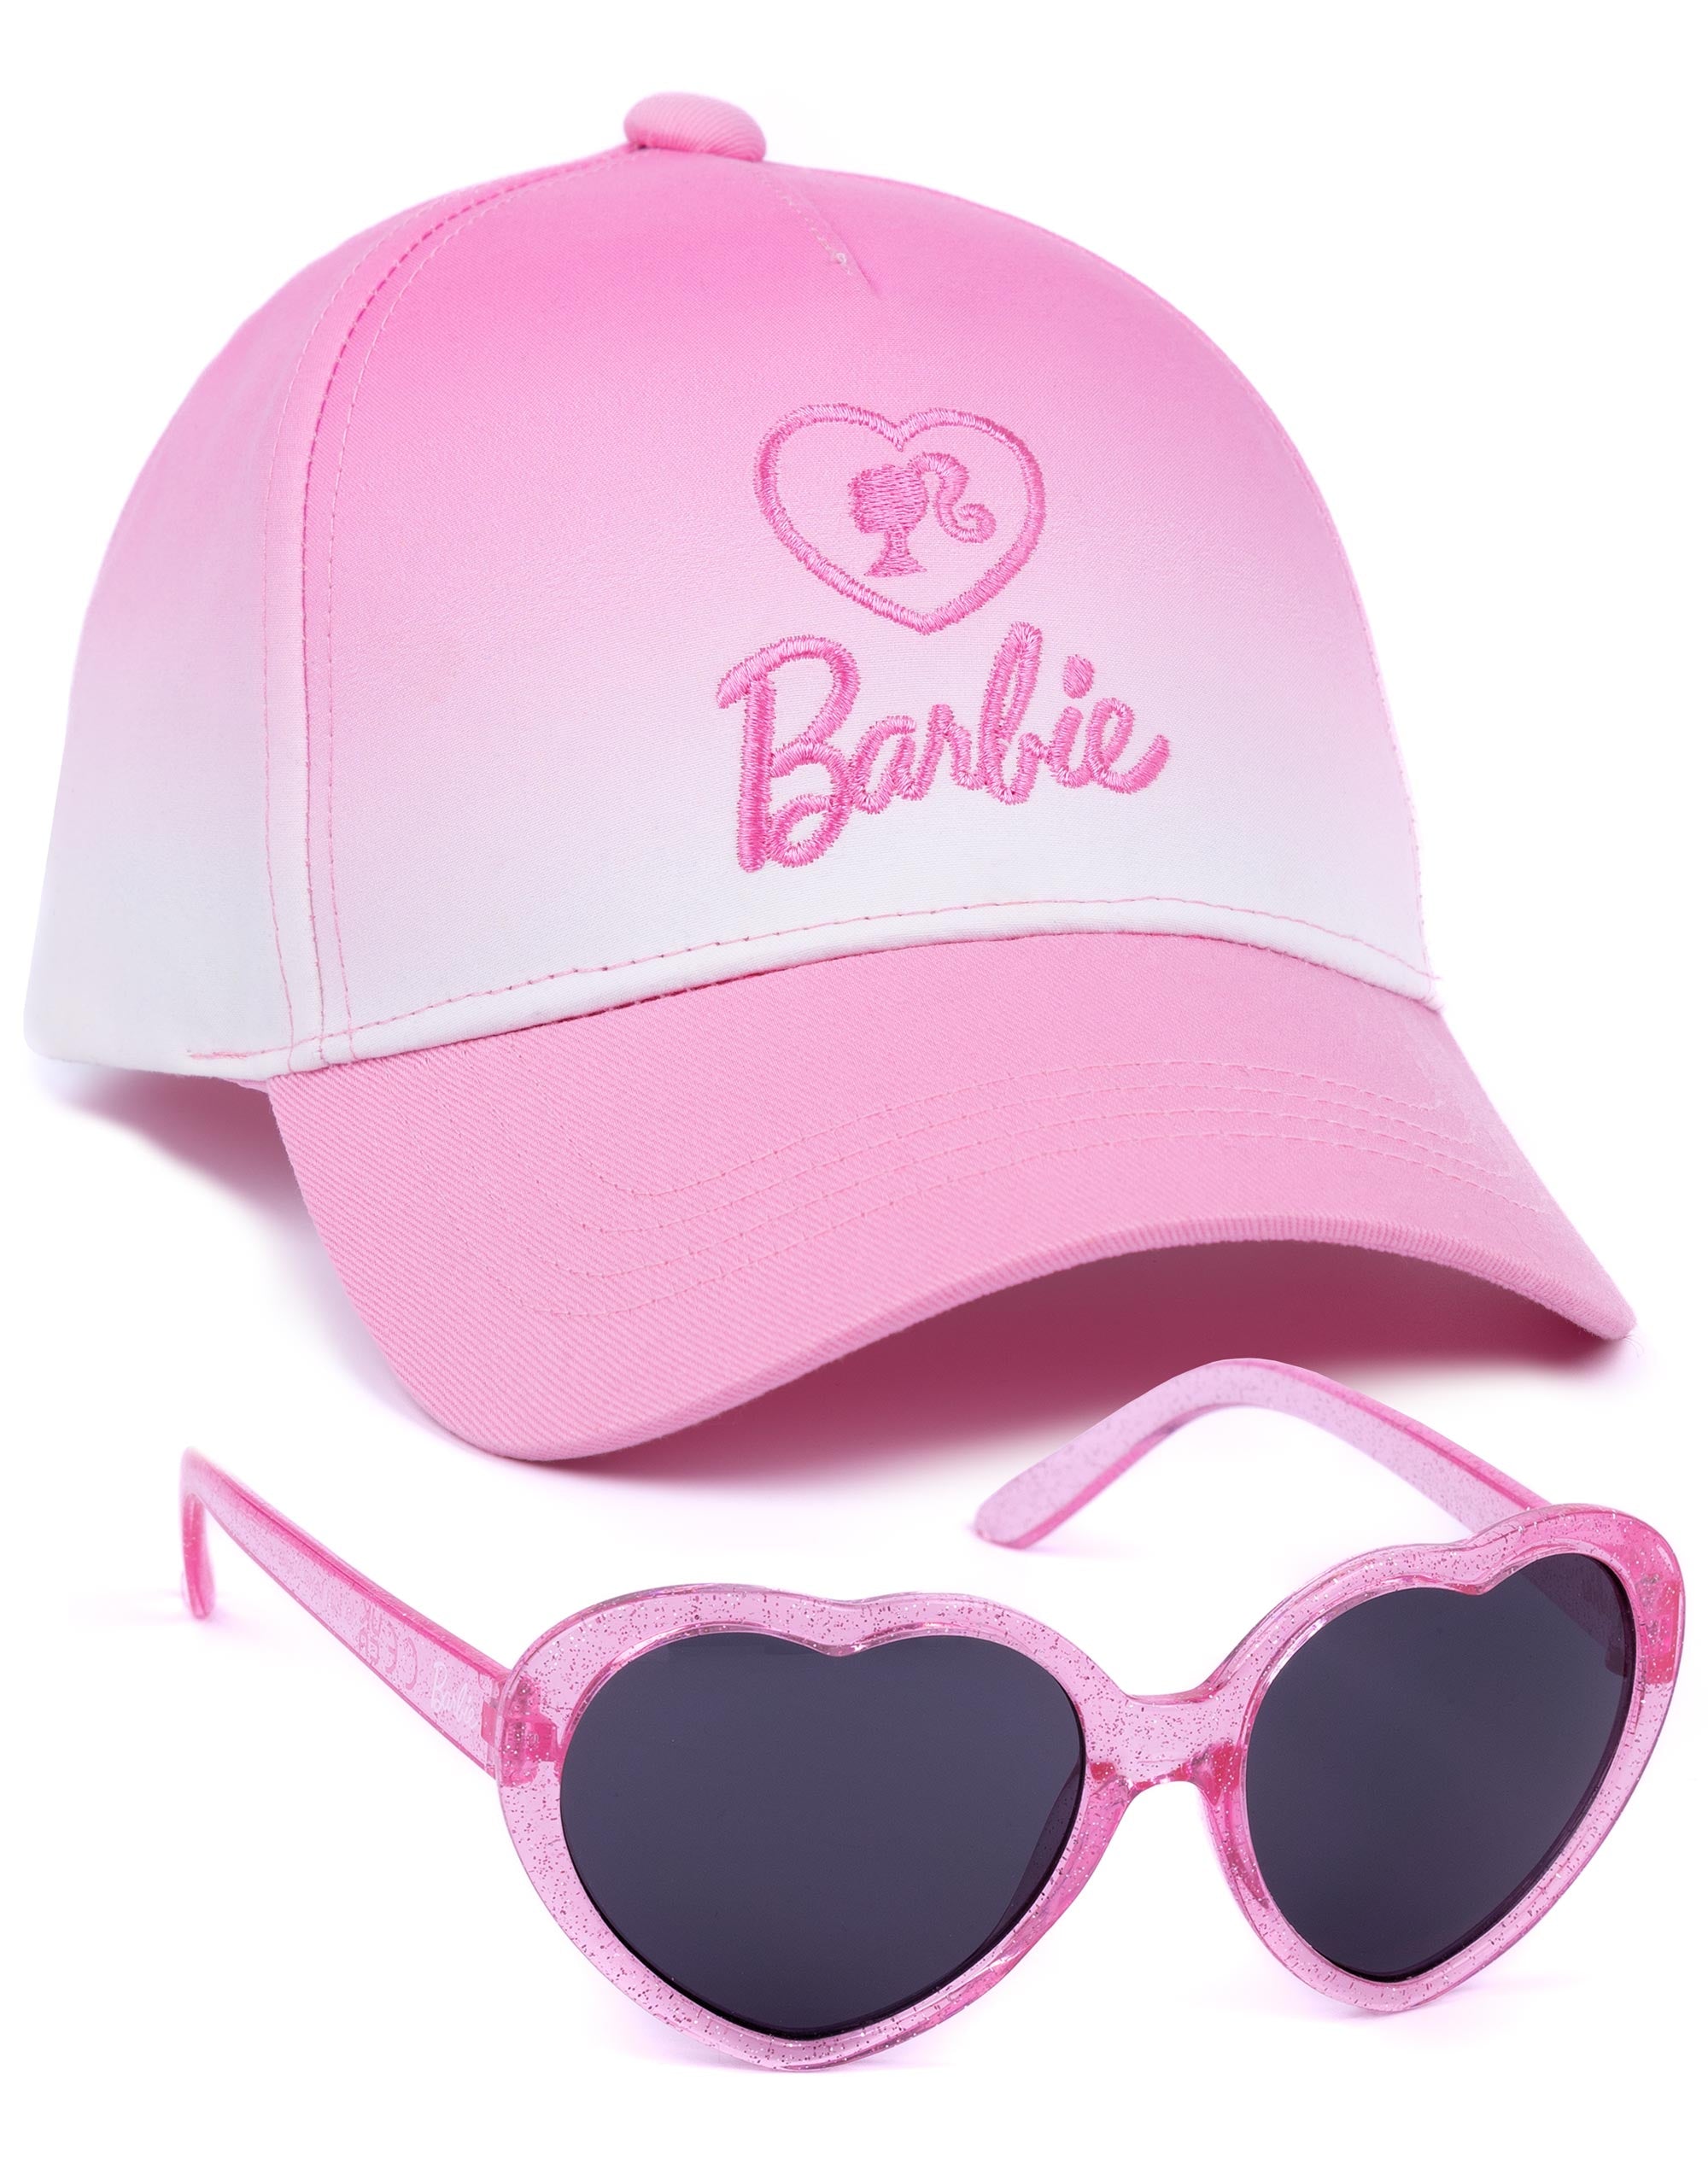 Barbie Cap and Sunglasses